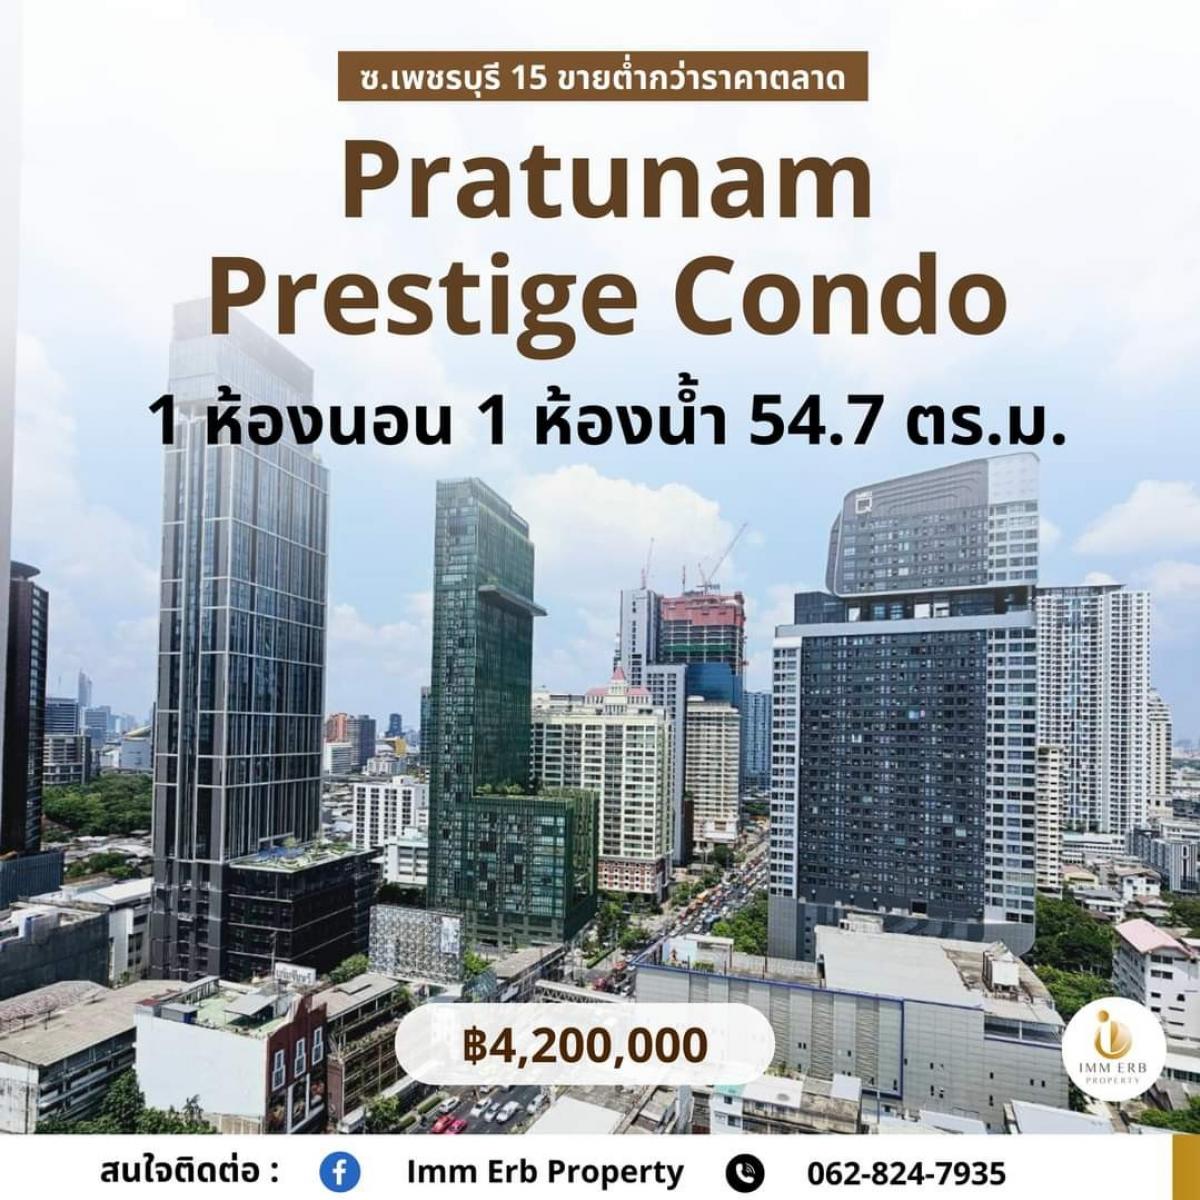 ขายคอนโดราชเทวี พญาไท : Pratunam Prestige Condo (ประตูน้ำ เพรสตีจ คอนโด) ซ.เพชรบุรี 15 VายSาคา 4,200,000 บาท เท่านั้น 🍀ราคาต่ำกว่าราคาตลาด 🍀